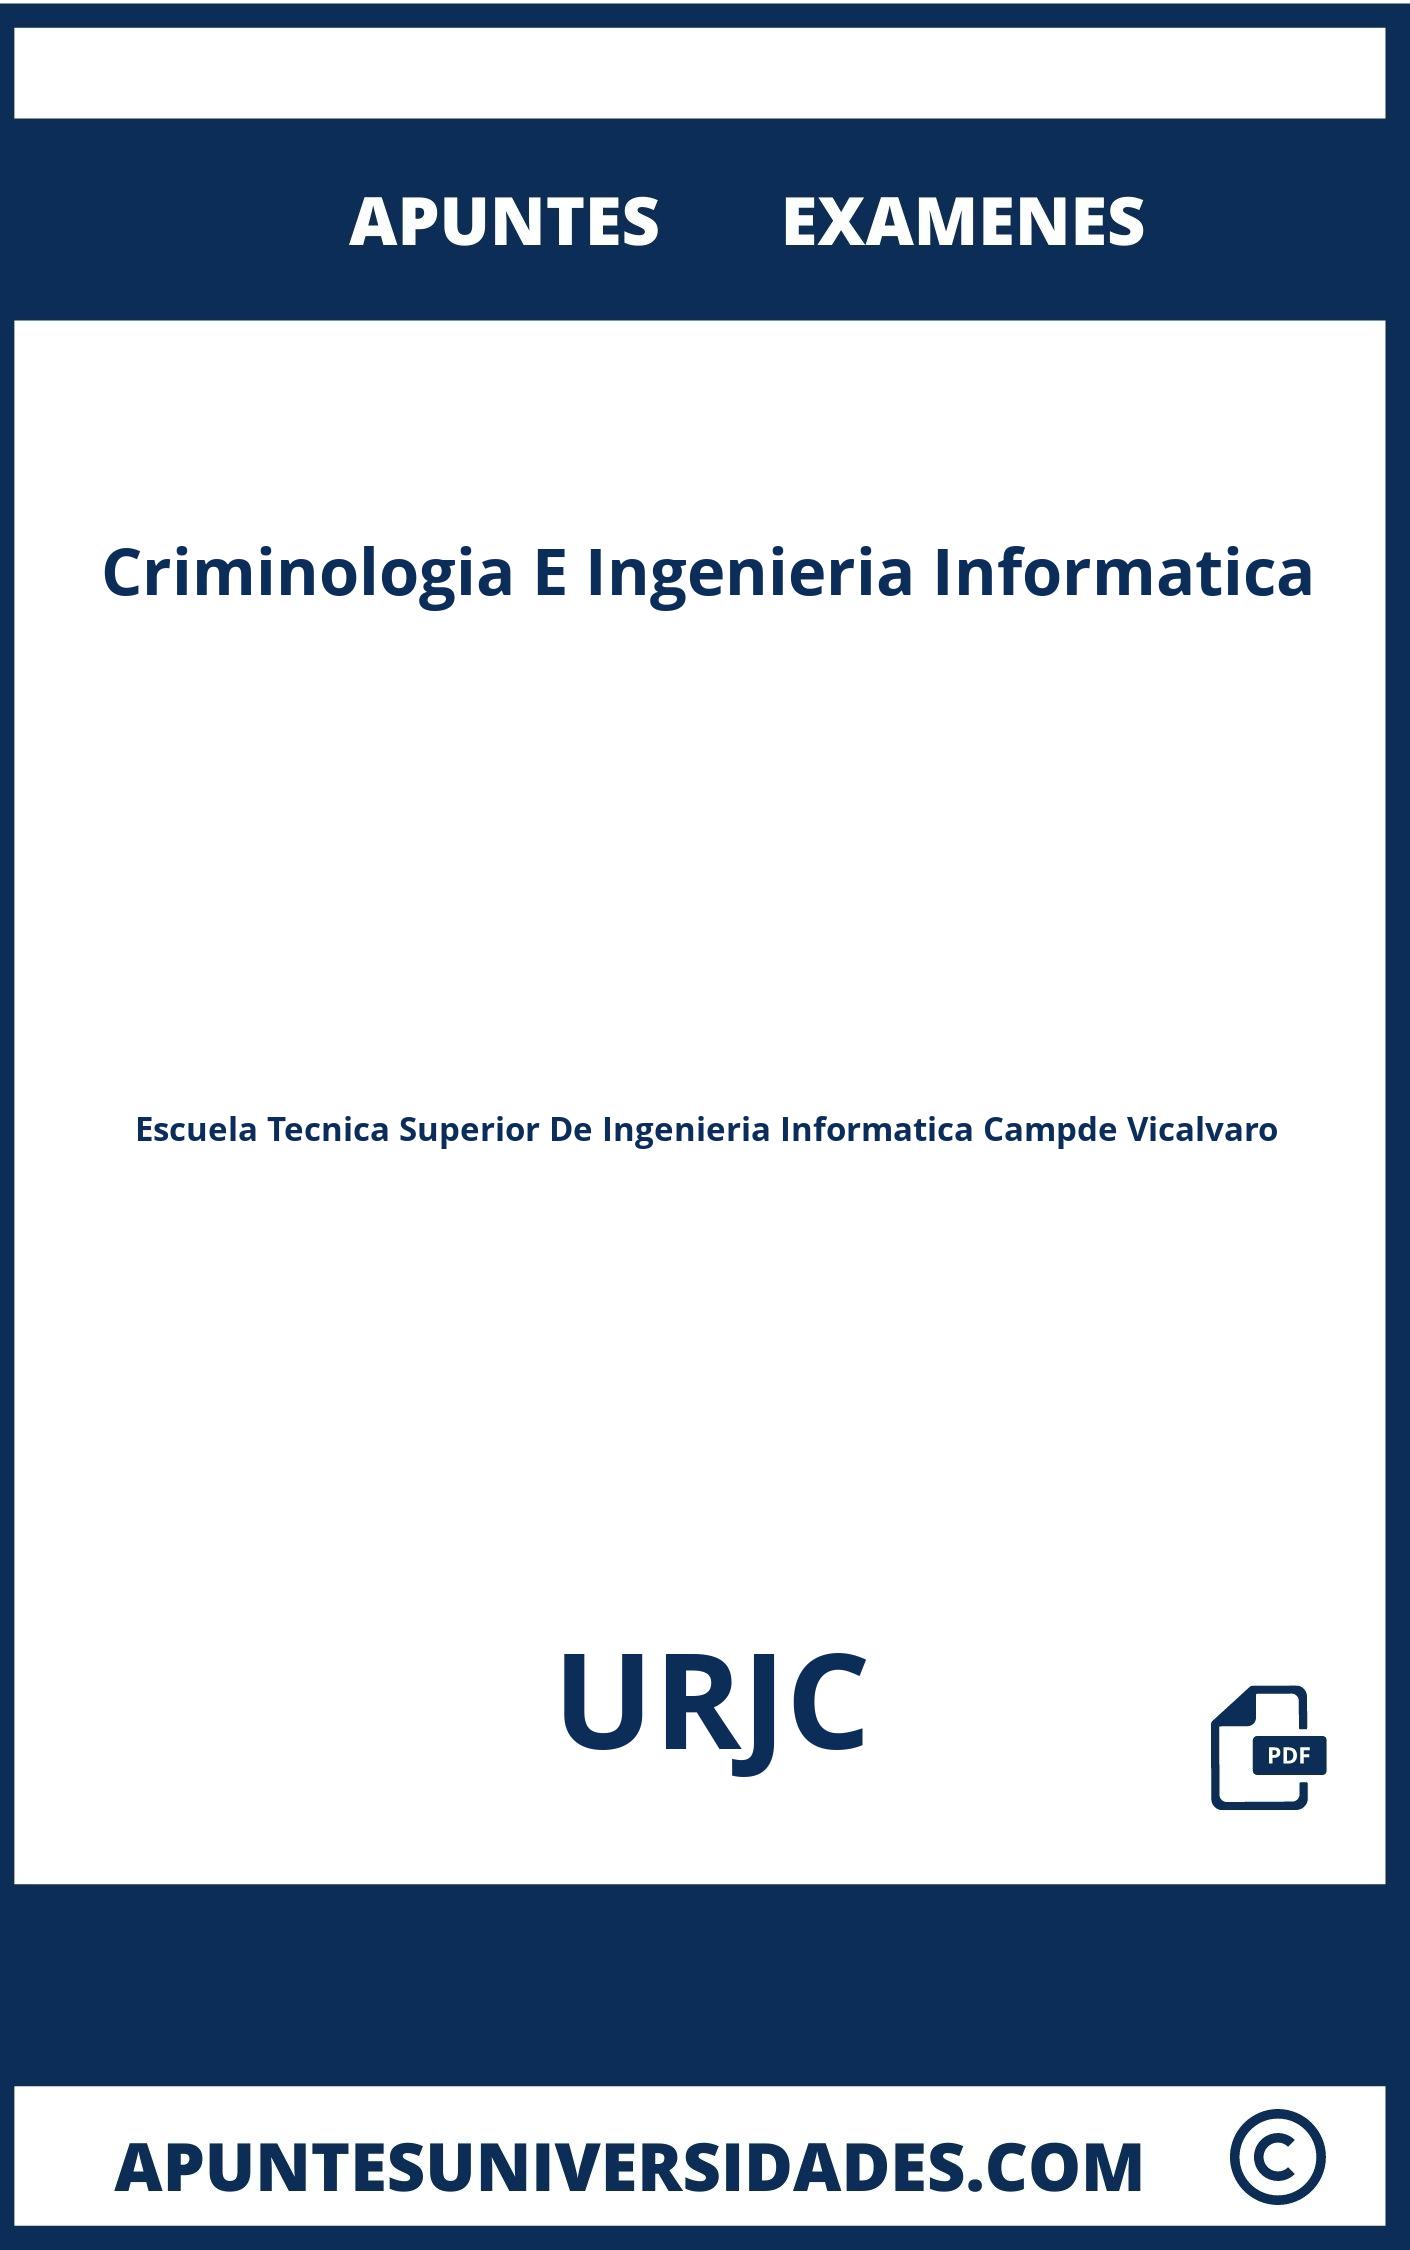 Apuntes y Examenes de Criminologia E Ingenieria Informatica URJC